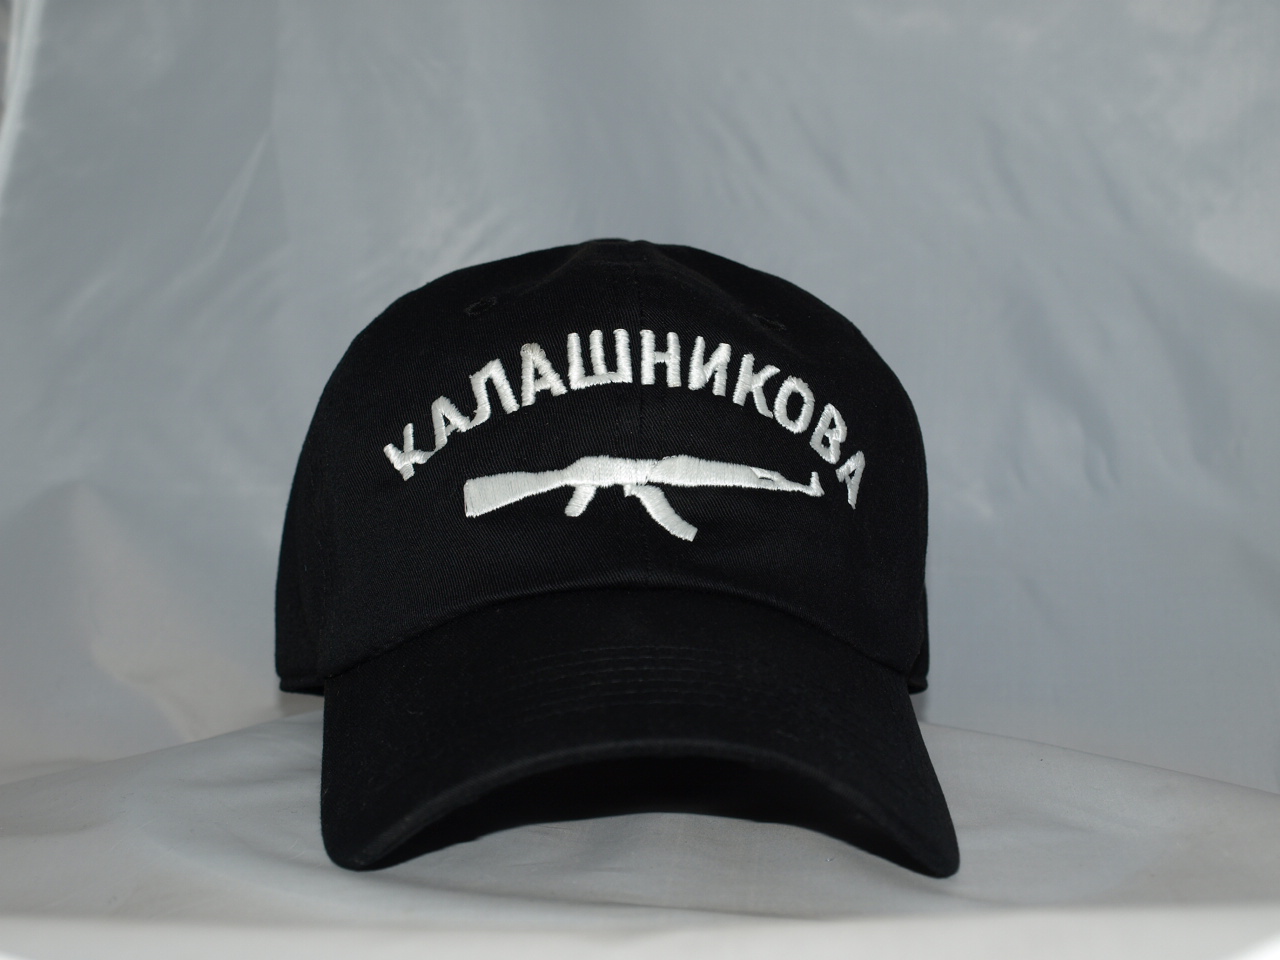 kalashnikov hat glow in the dark